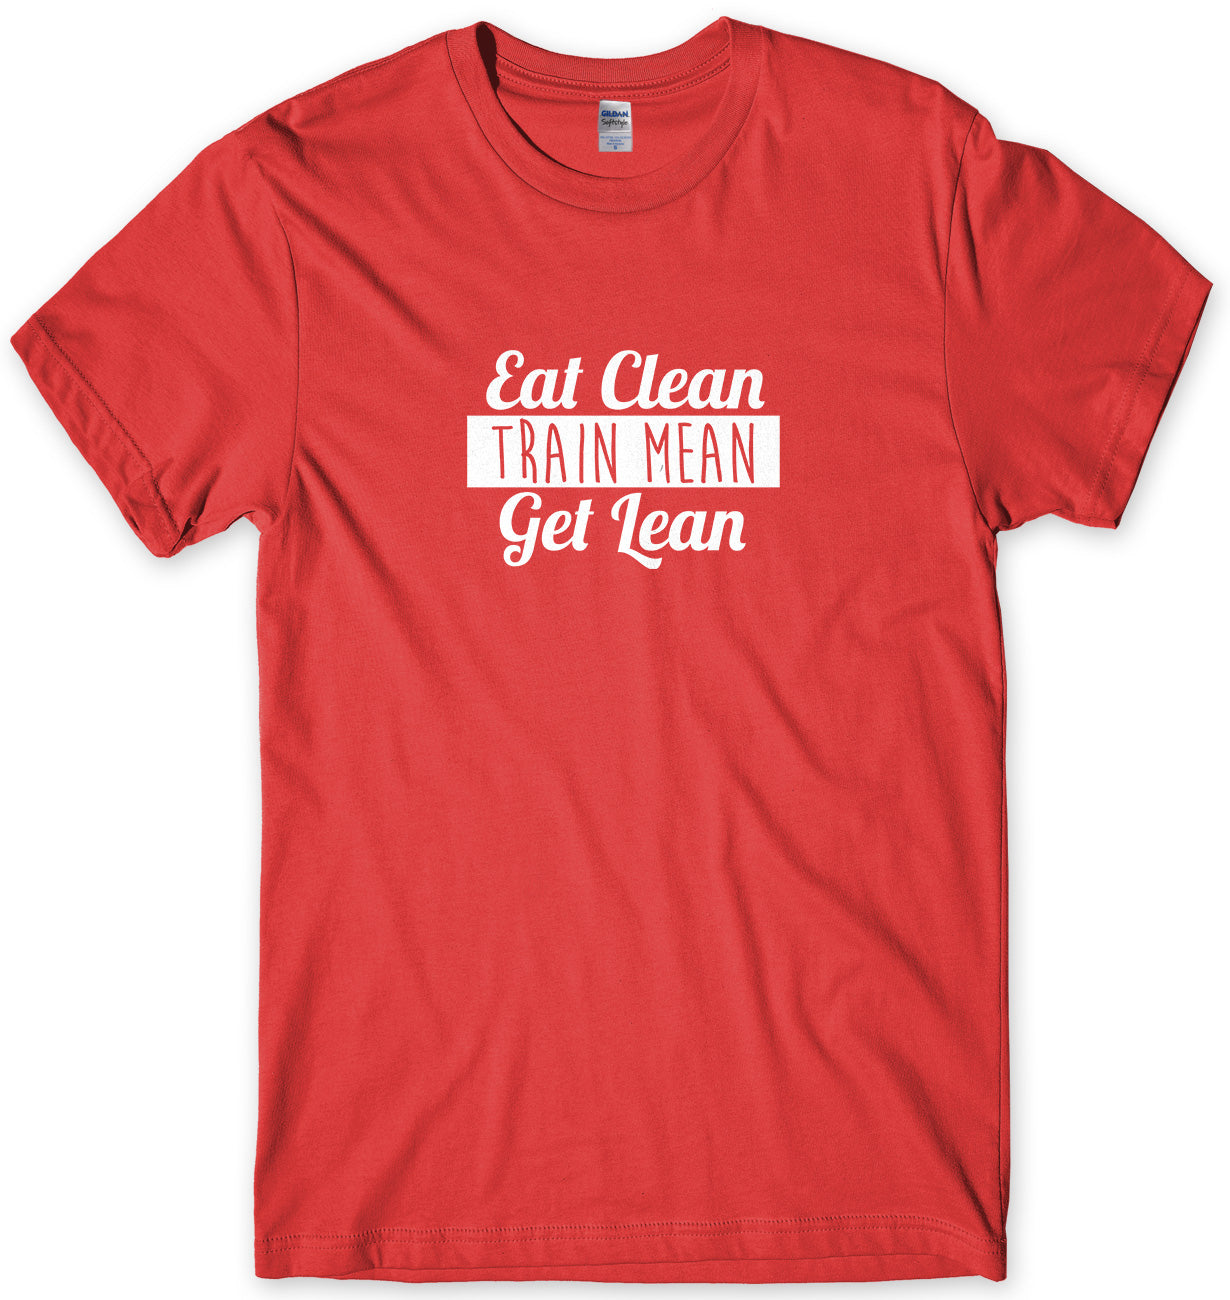 Eat Clean Train Mean Get Lean Mens Unisex T-Shirt